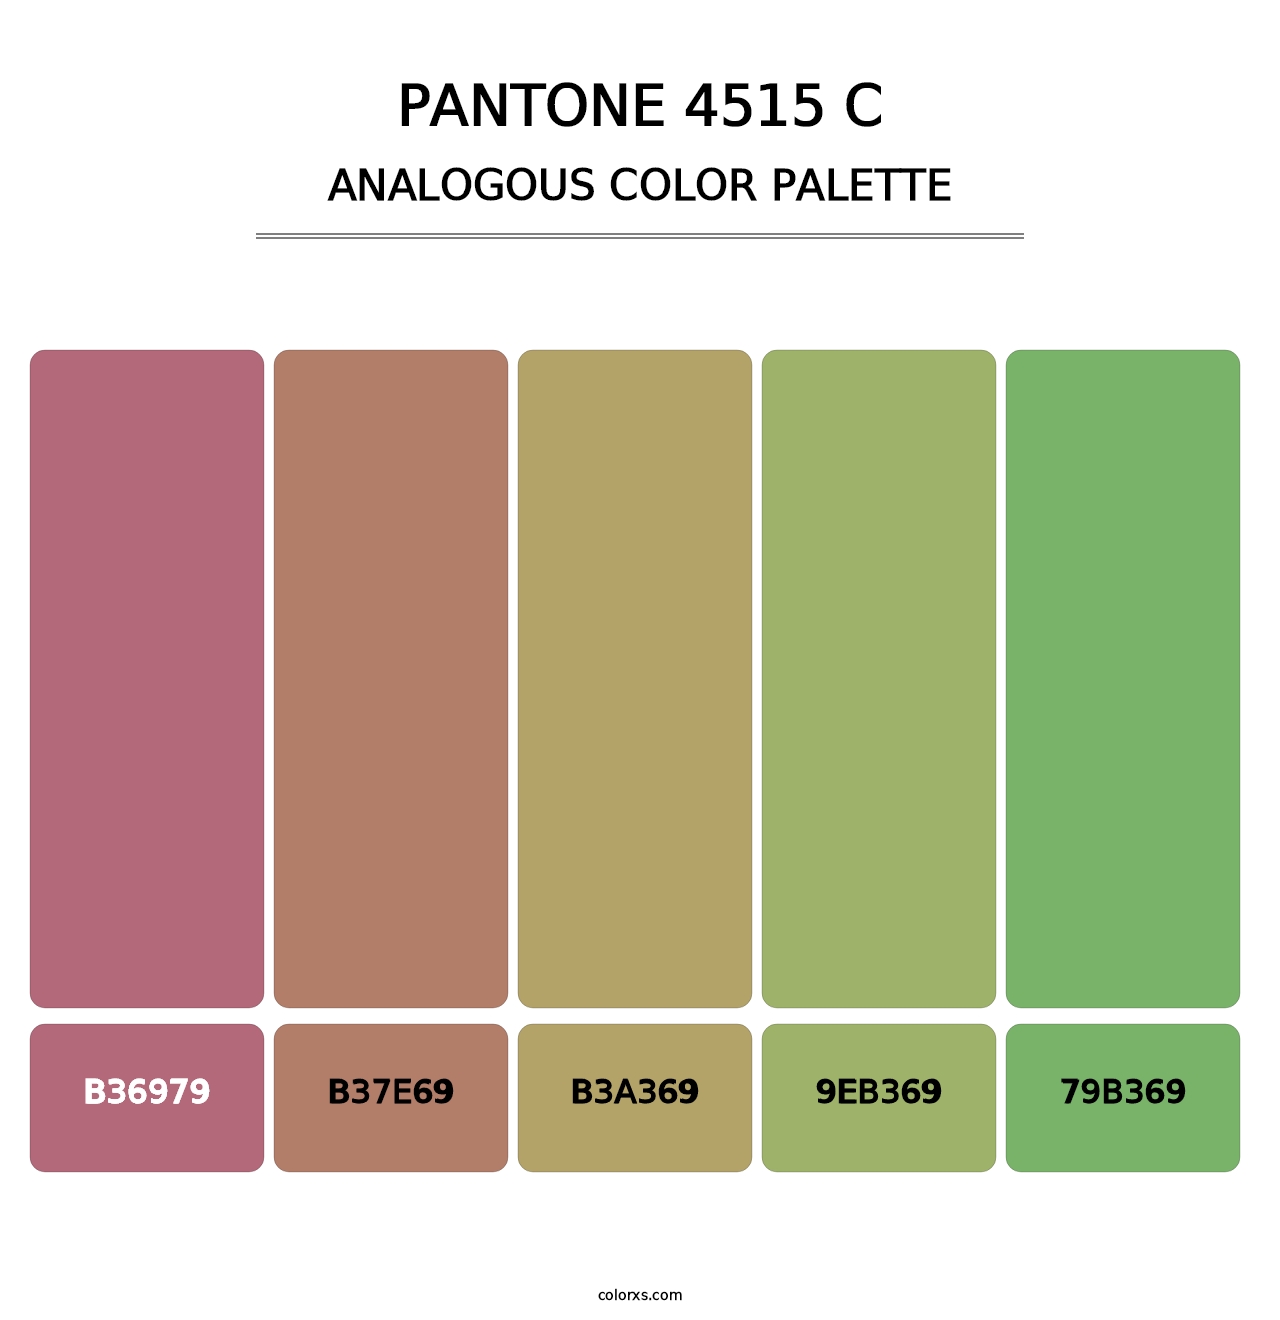 PANTONE 4515 C - Analogous Color Palette